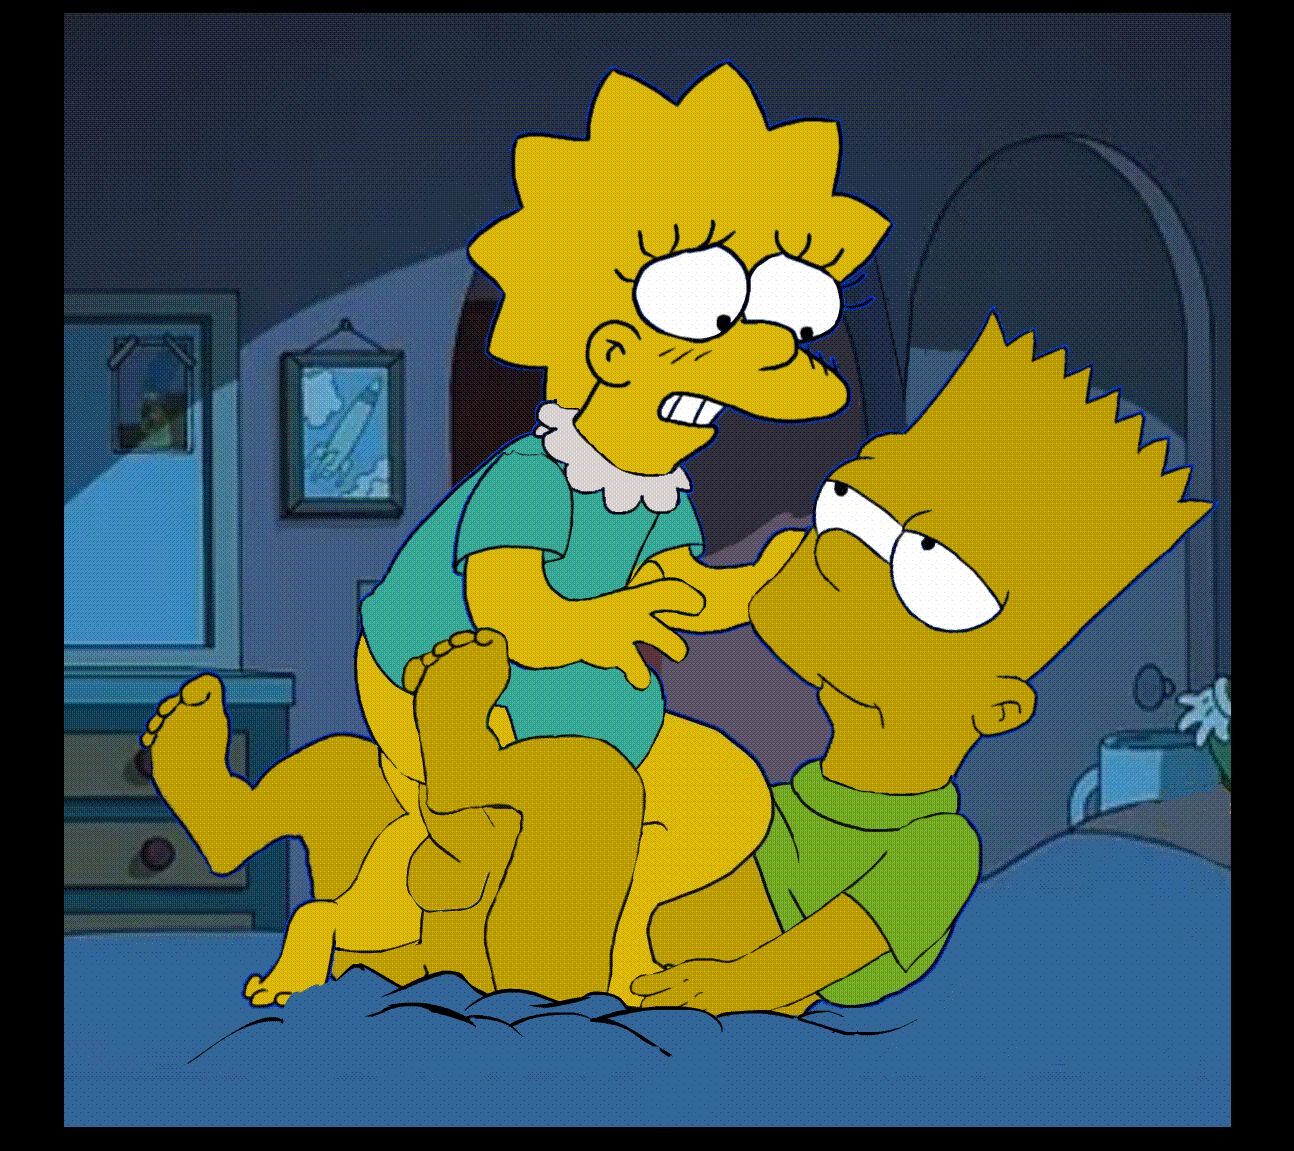 Porno GIFs Los Simpsons! Gran colección de animaciones